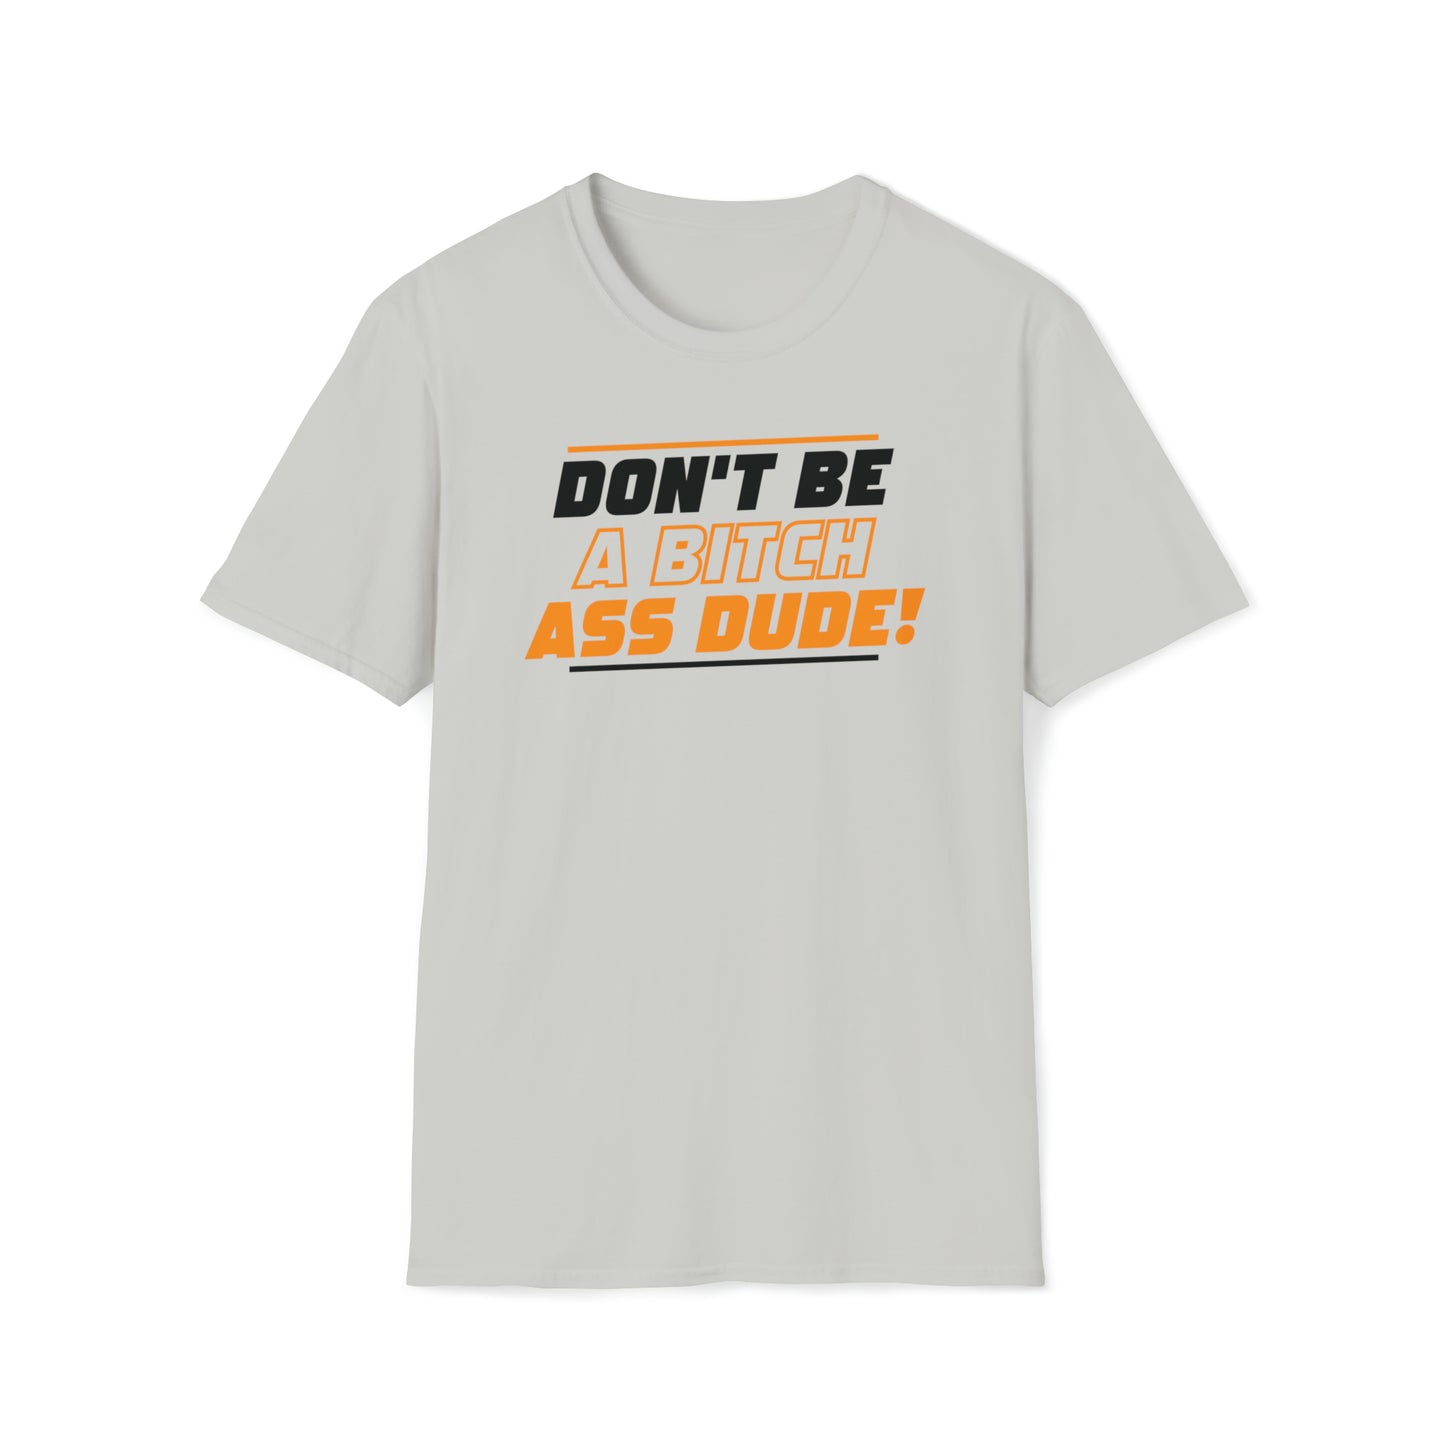 Don't Be A Bitch Ass Dude! T-Shirt